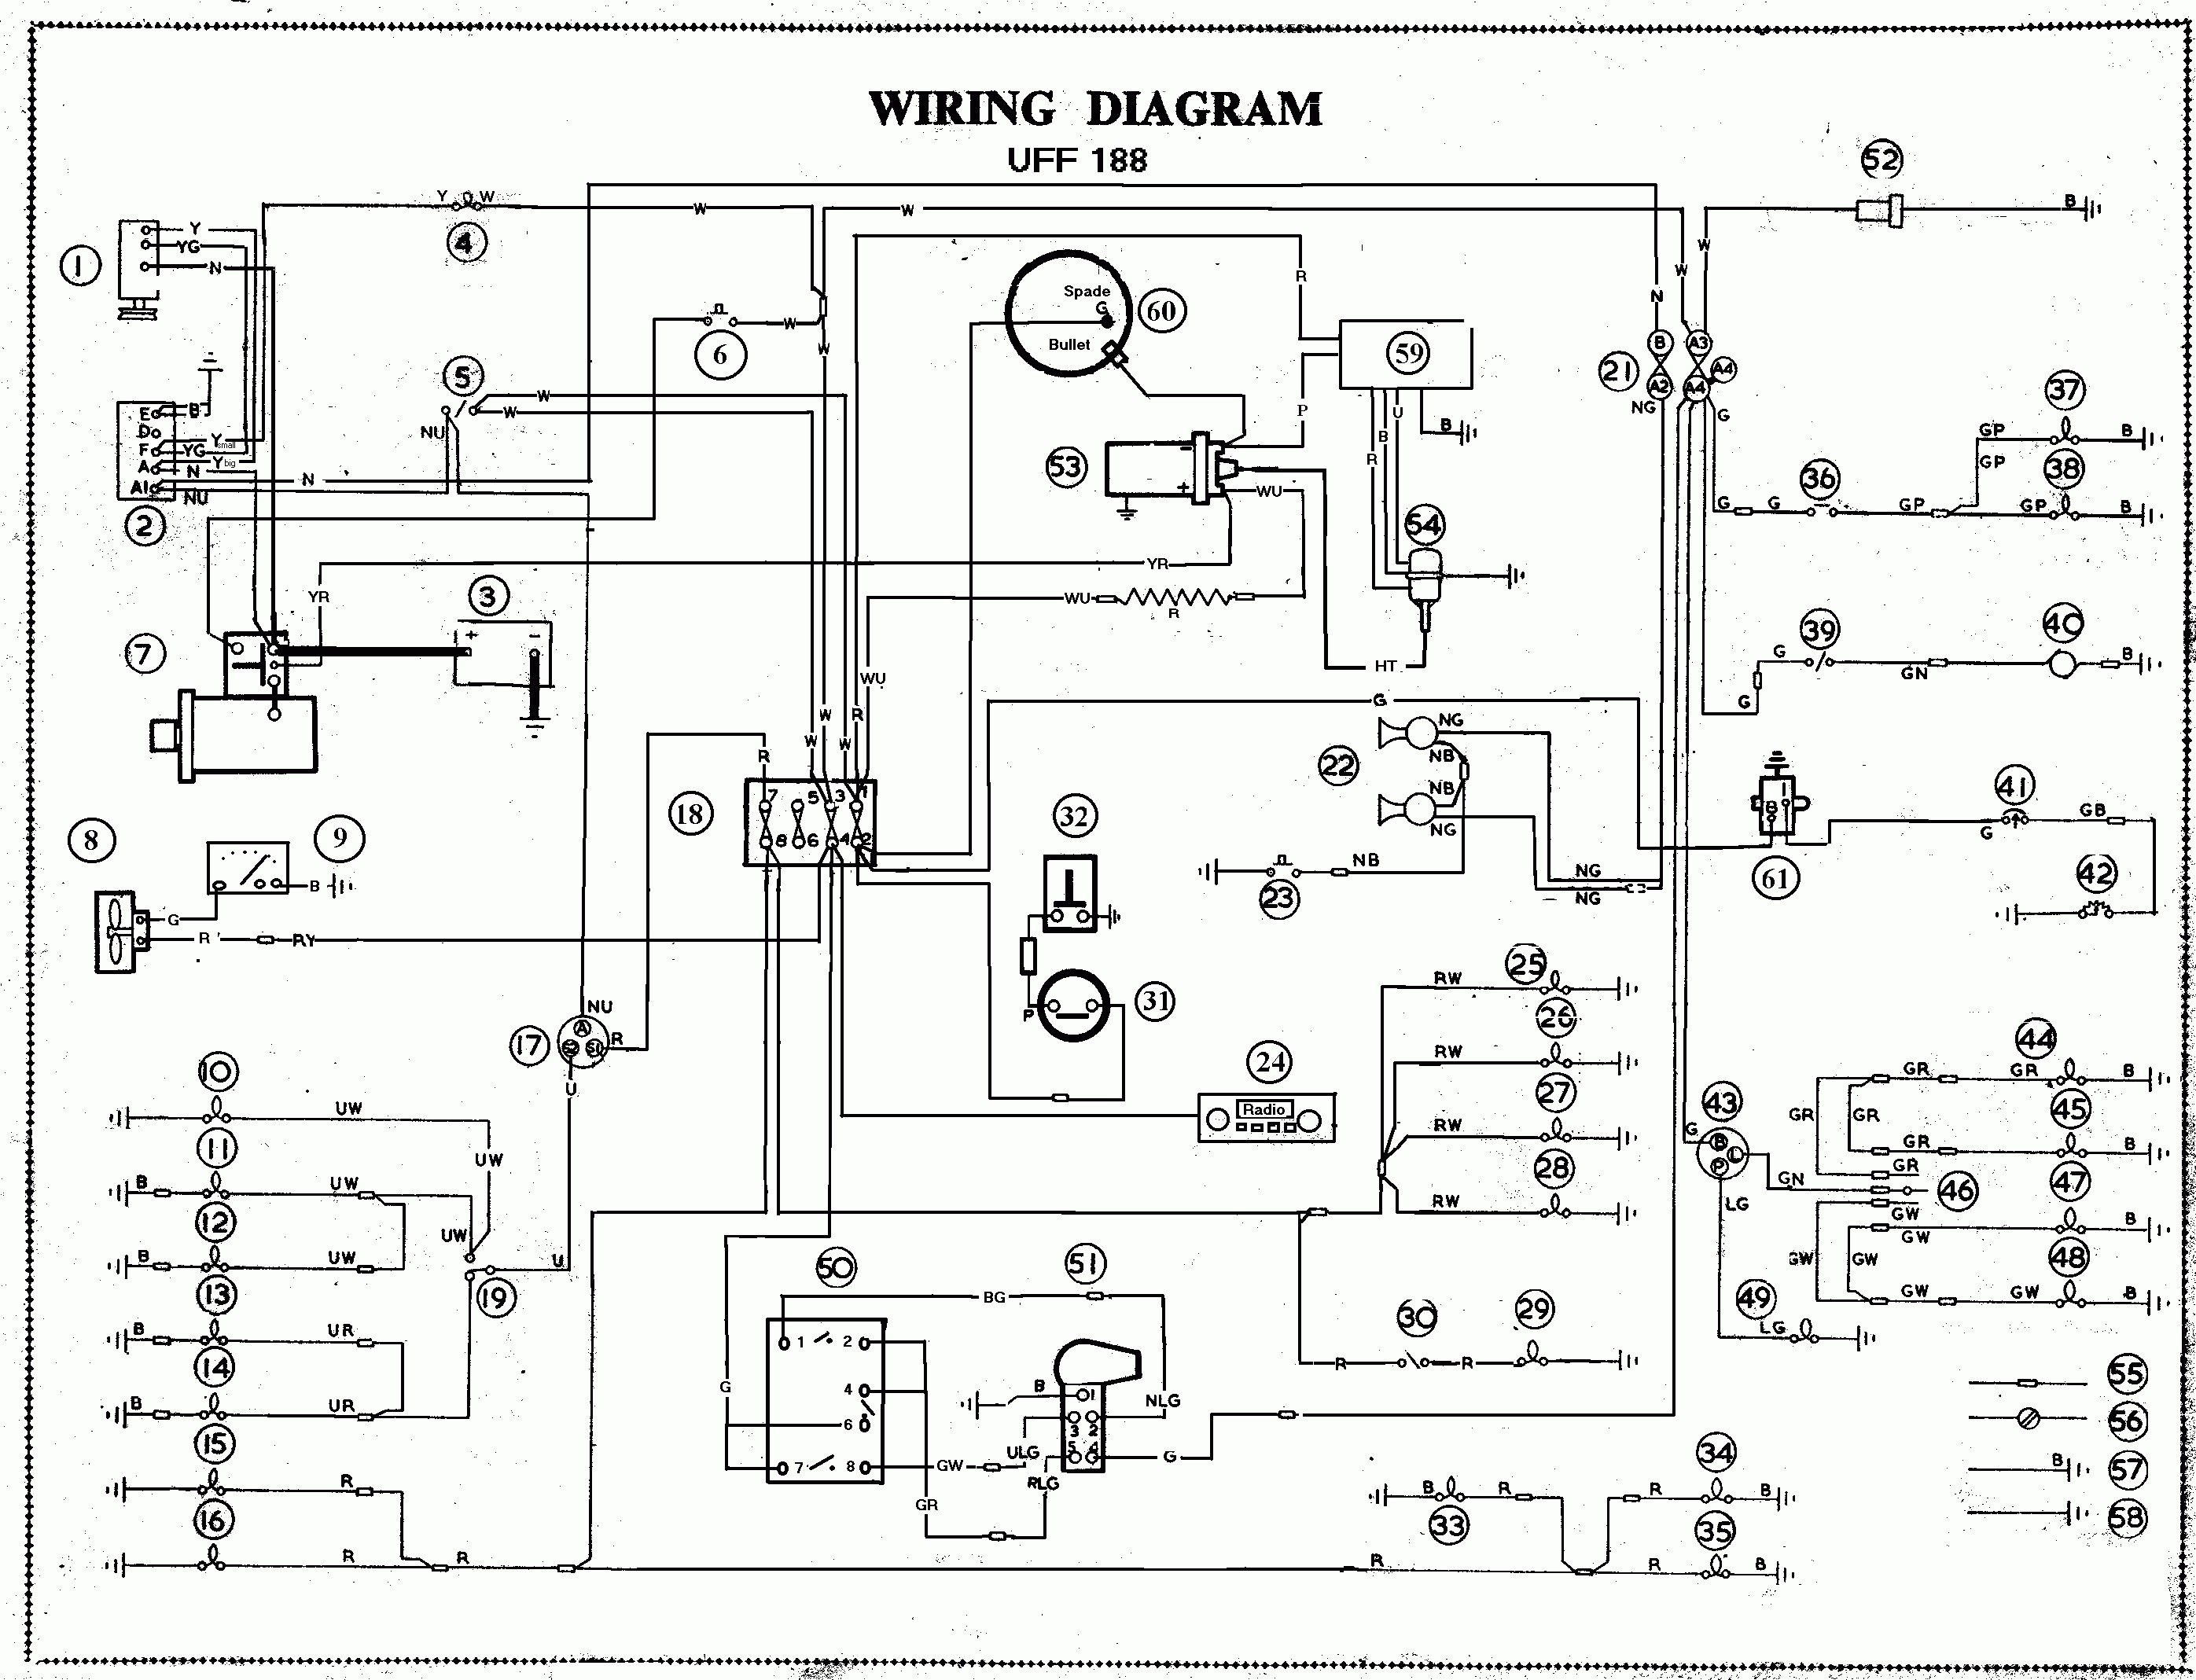 wiring diagram for electric car free wiring diagram xwiaw rh xwiaw us